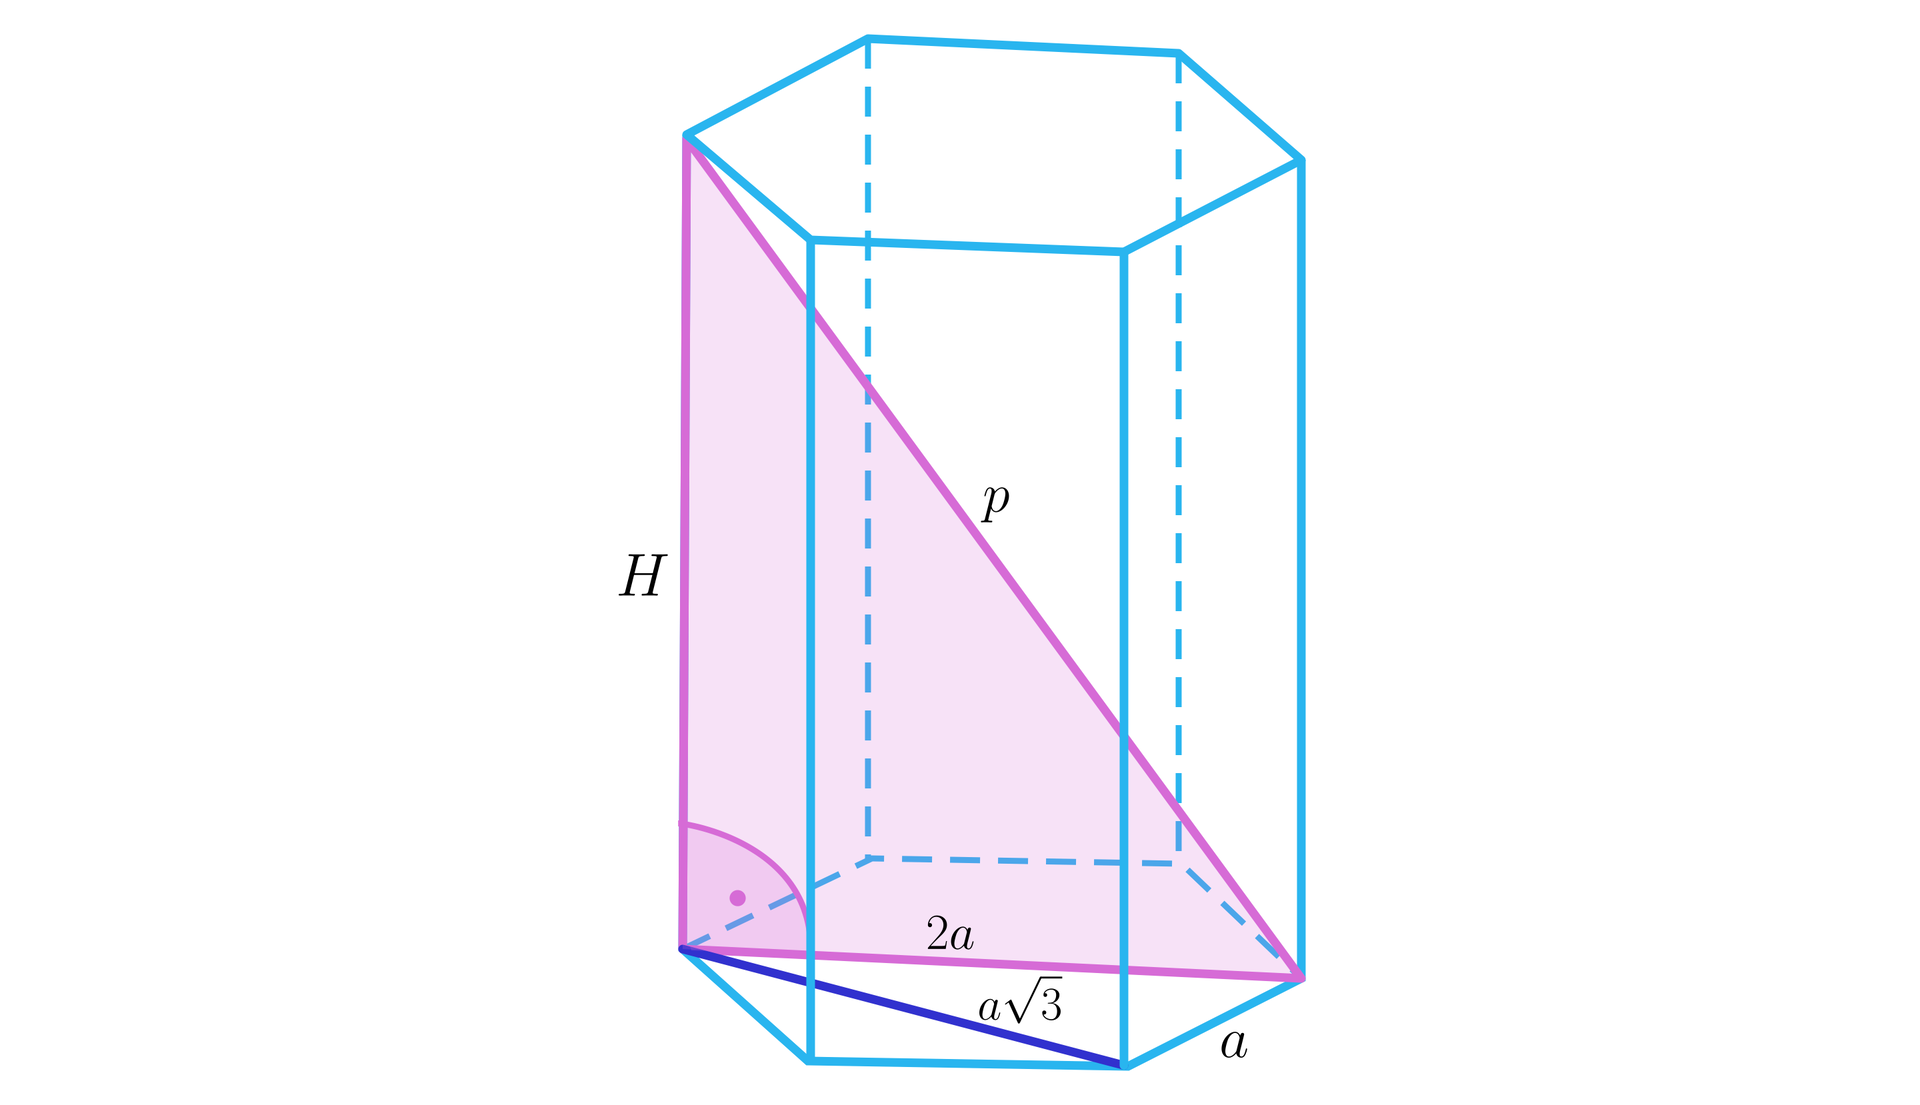 Ilustracja przedstawia graniastosłup prawidłowy sześciokątny. Wysokość graniastosłupa podpisano literą H. Długość krawędzi podstawy jest równa a. Krótsza przekątna podstawy ma długość a3. Dłuższa przekątna podstawy ma długość 2a. Dłuższa przekątna podstawy wraz z krawędzią boczną graniastosłupa i jego dłuższą przekątną tworzą trójkąt prostokątny. Którego przeciwprostokątna jest podpisana literą p.